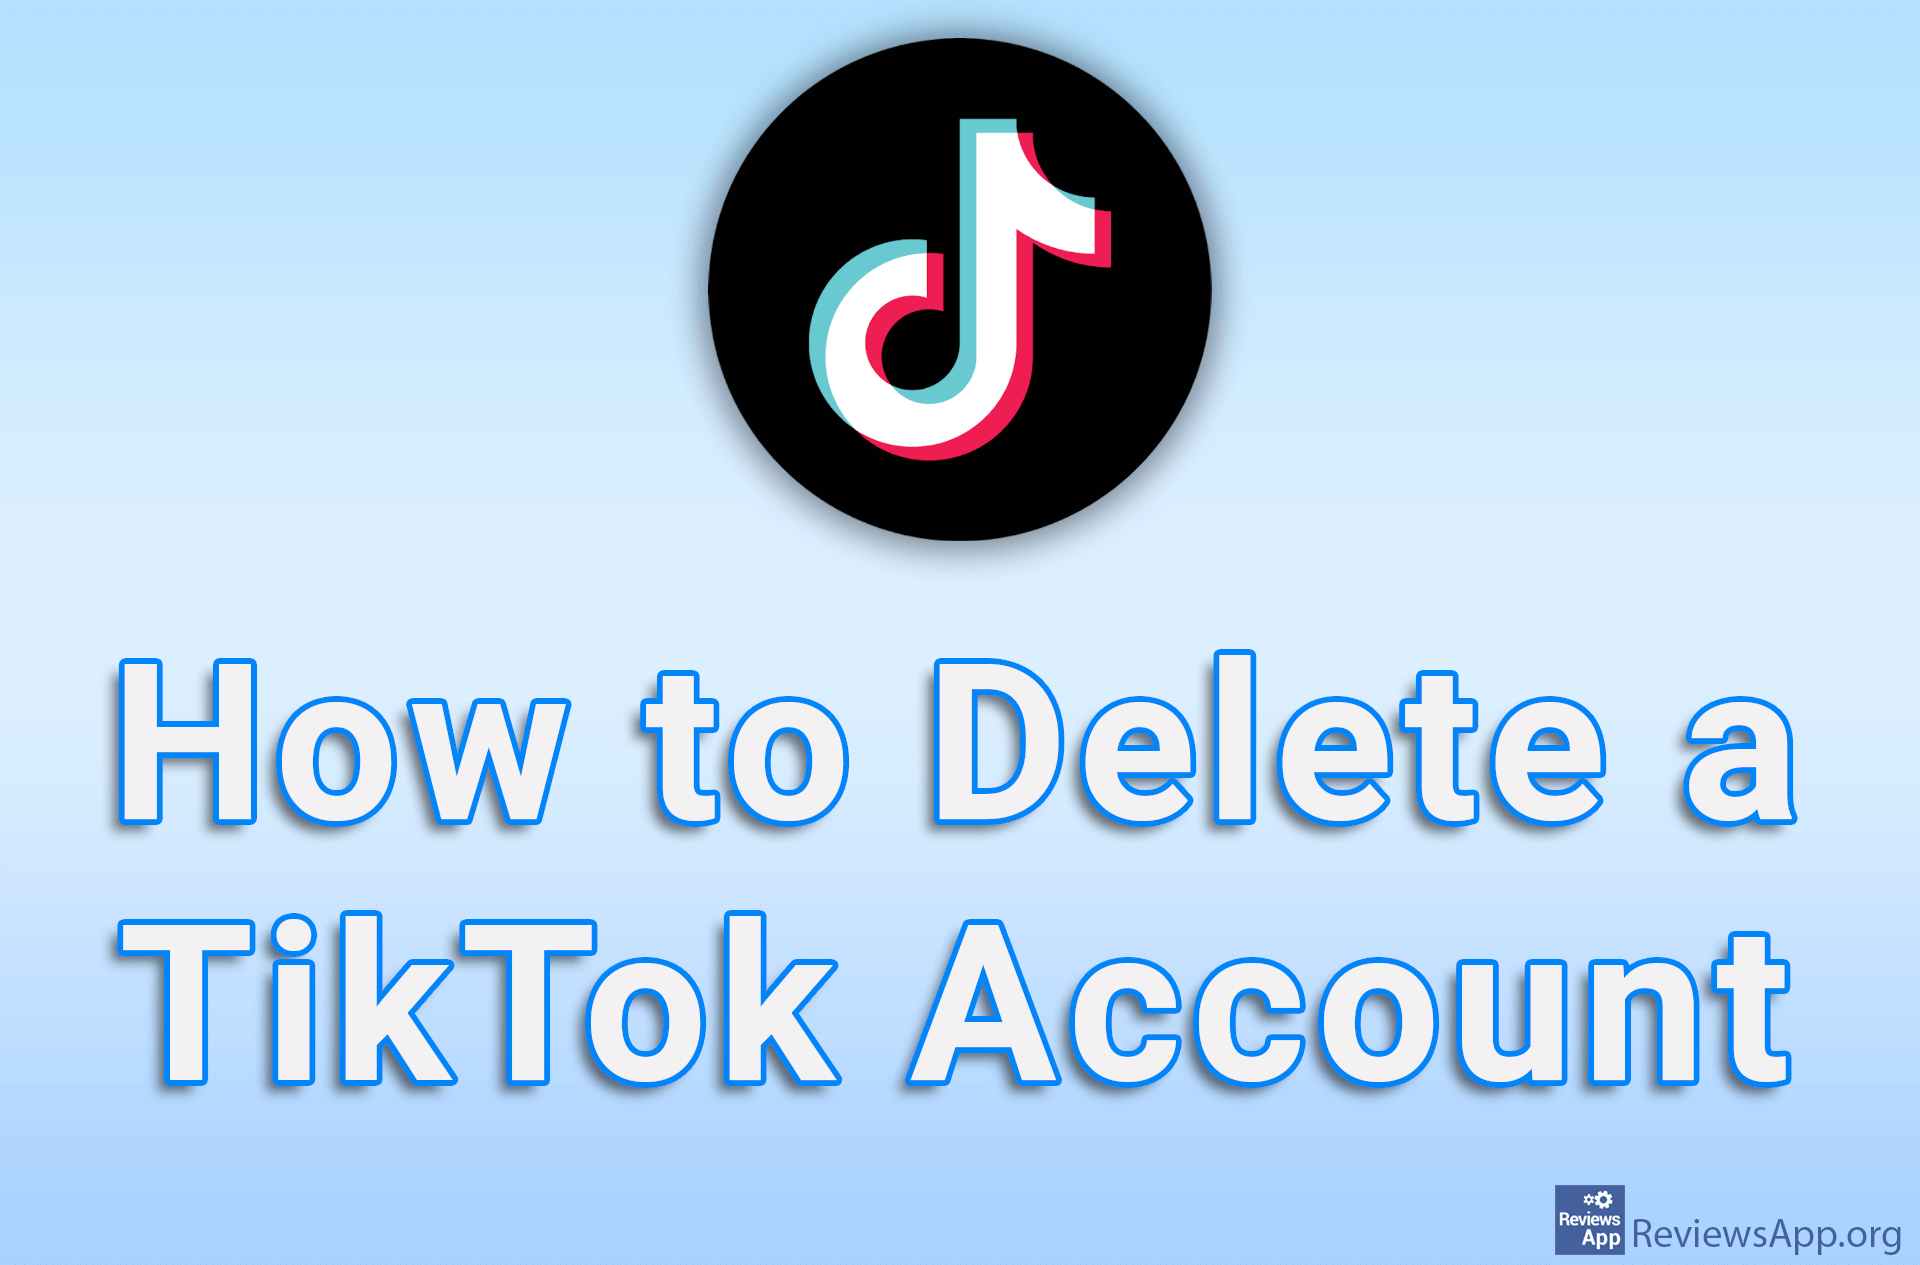 How to Delete a TikTok Account